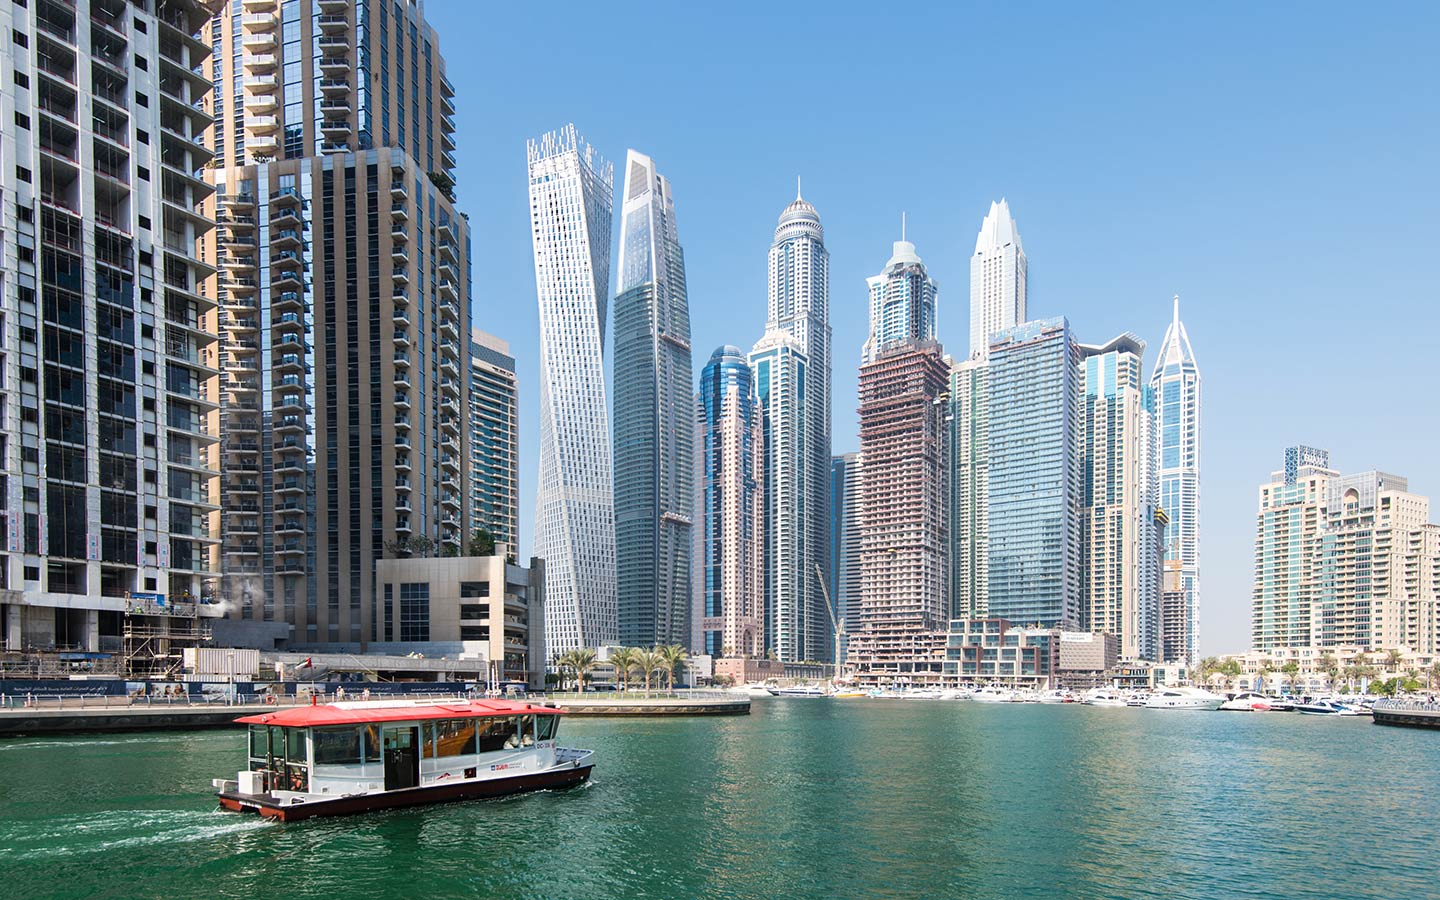 يعتبر الباض المائي، وسيلة نقل مريحة وآمنة عبر خور دبي